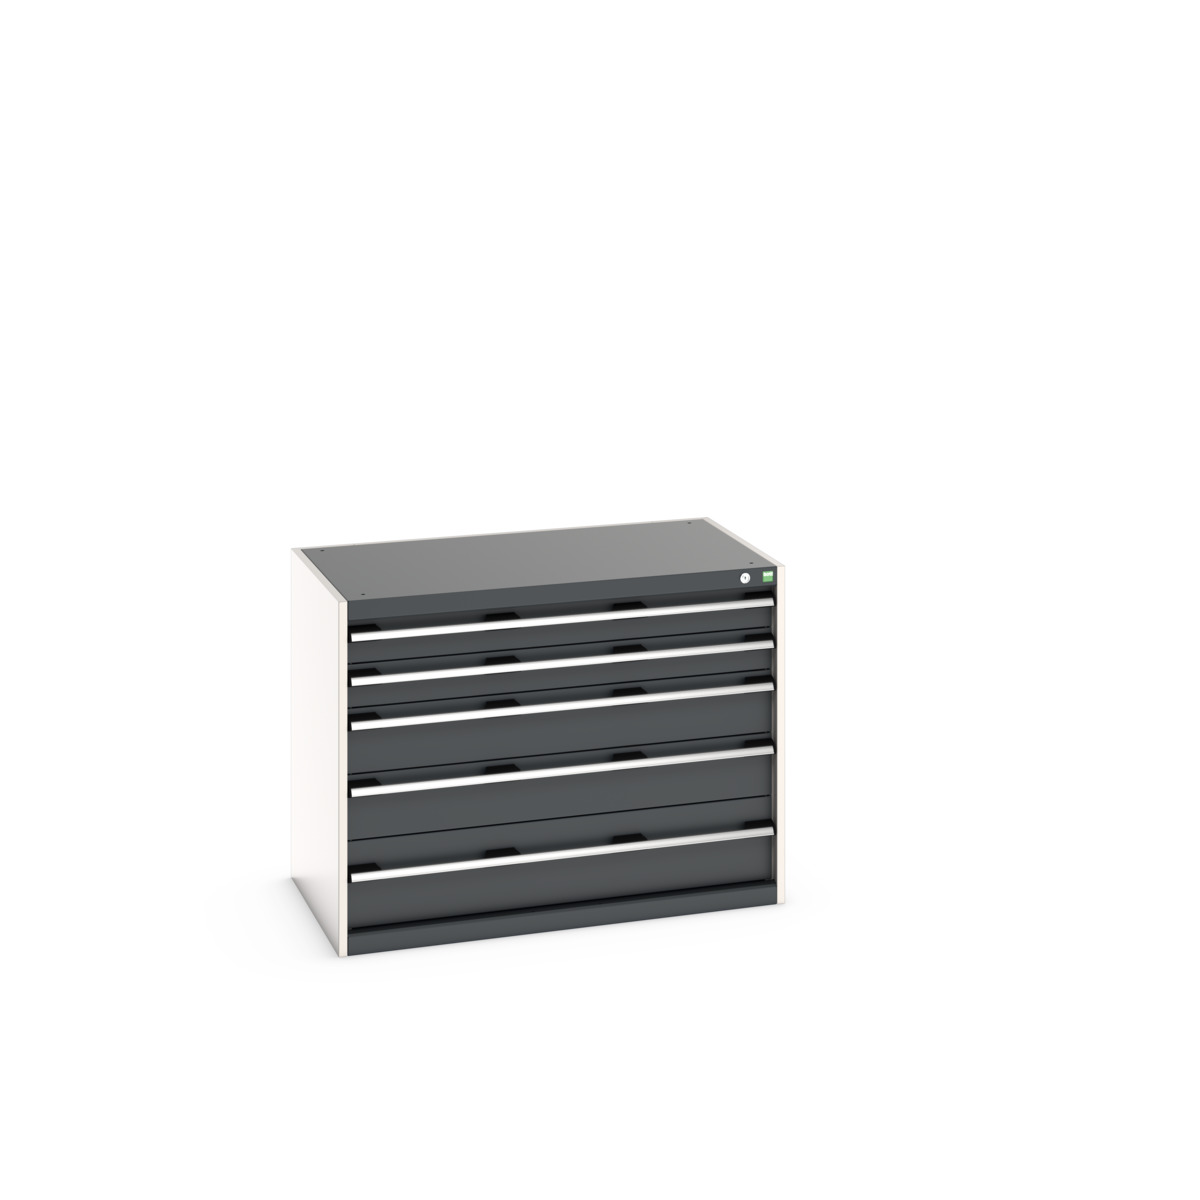 40021009.19V - cubio drawer cabinet